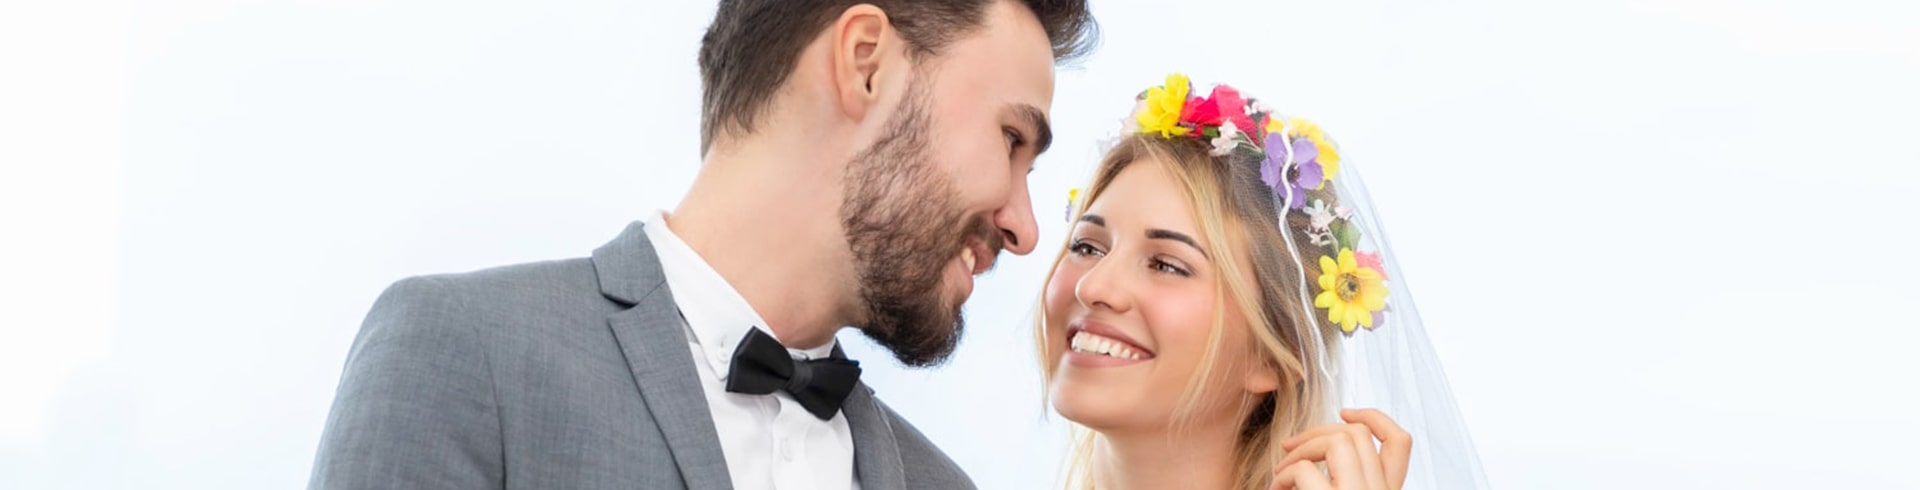 Namensänderung nach der Hochzeit online in Deutschland